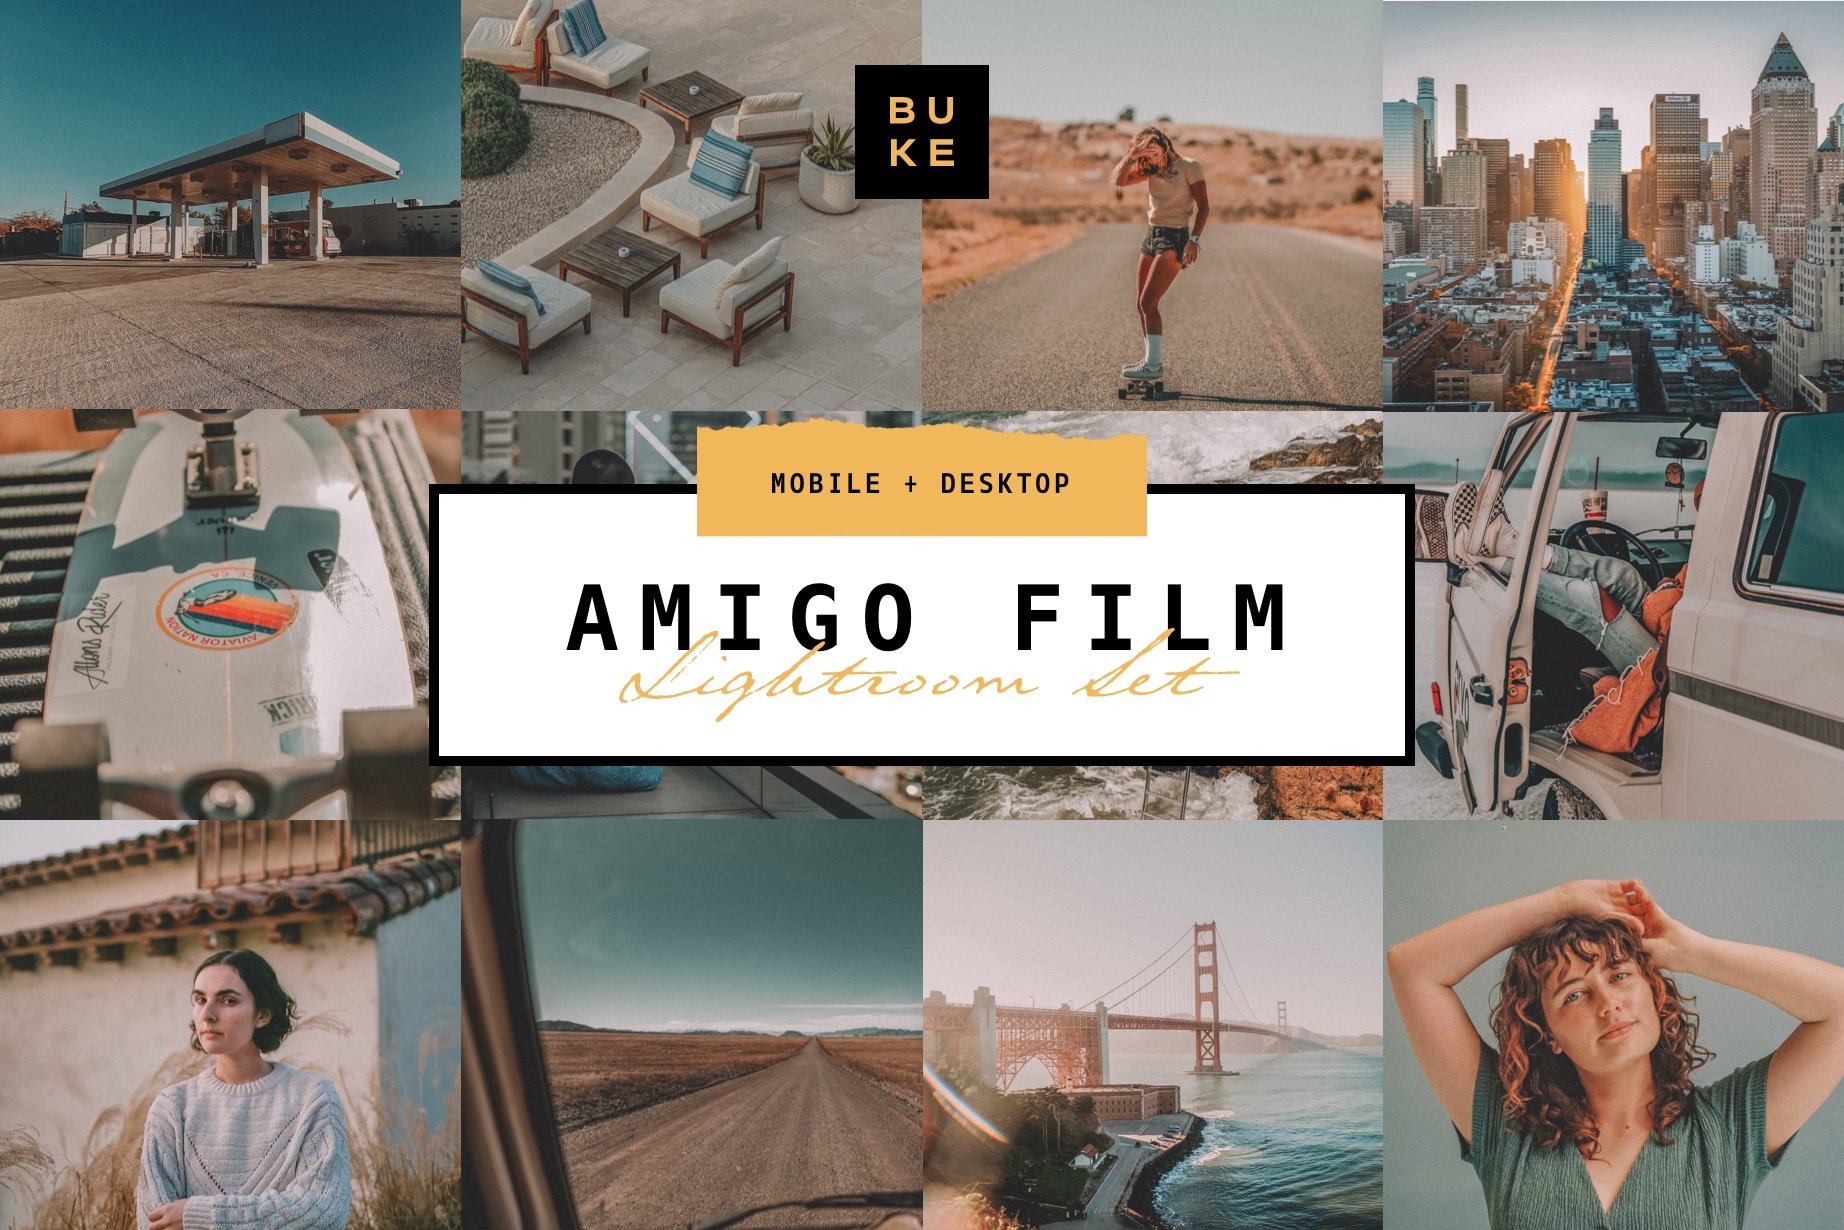 Amigo Film – 4 Lightroom Preset Packcover image.